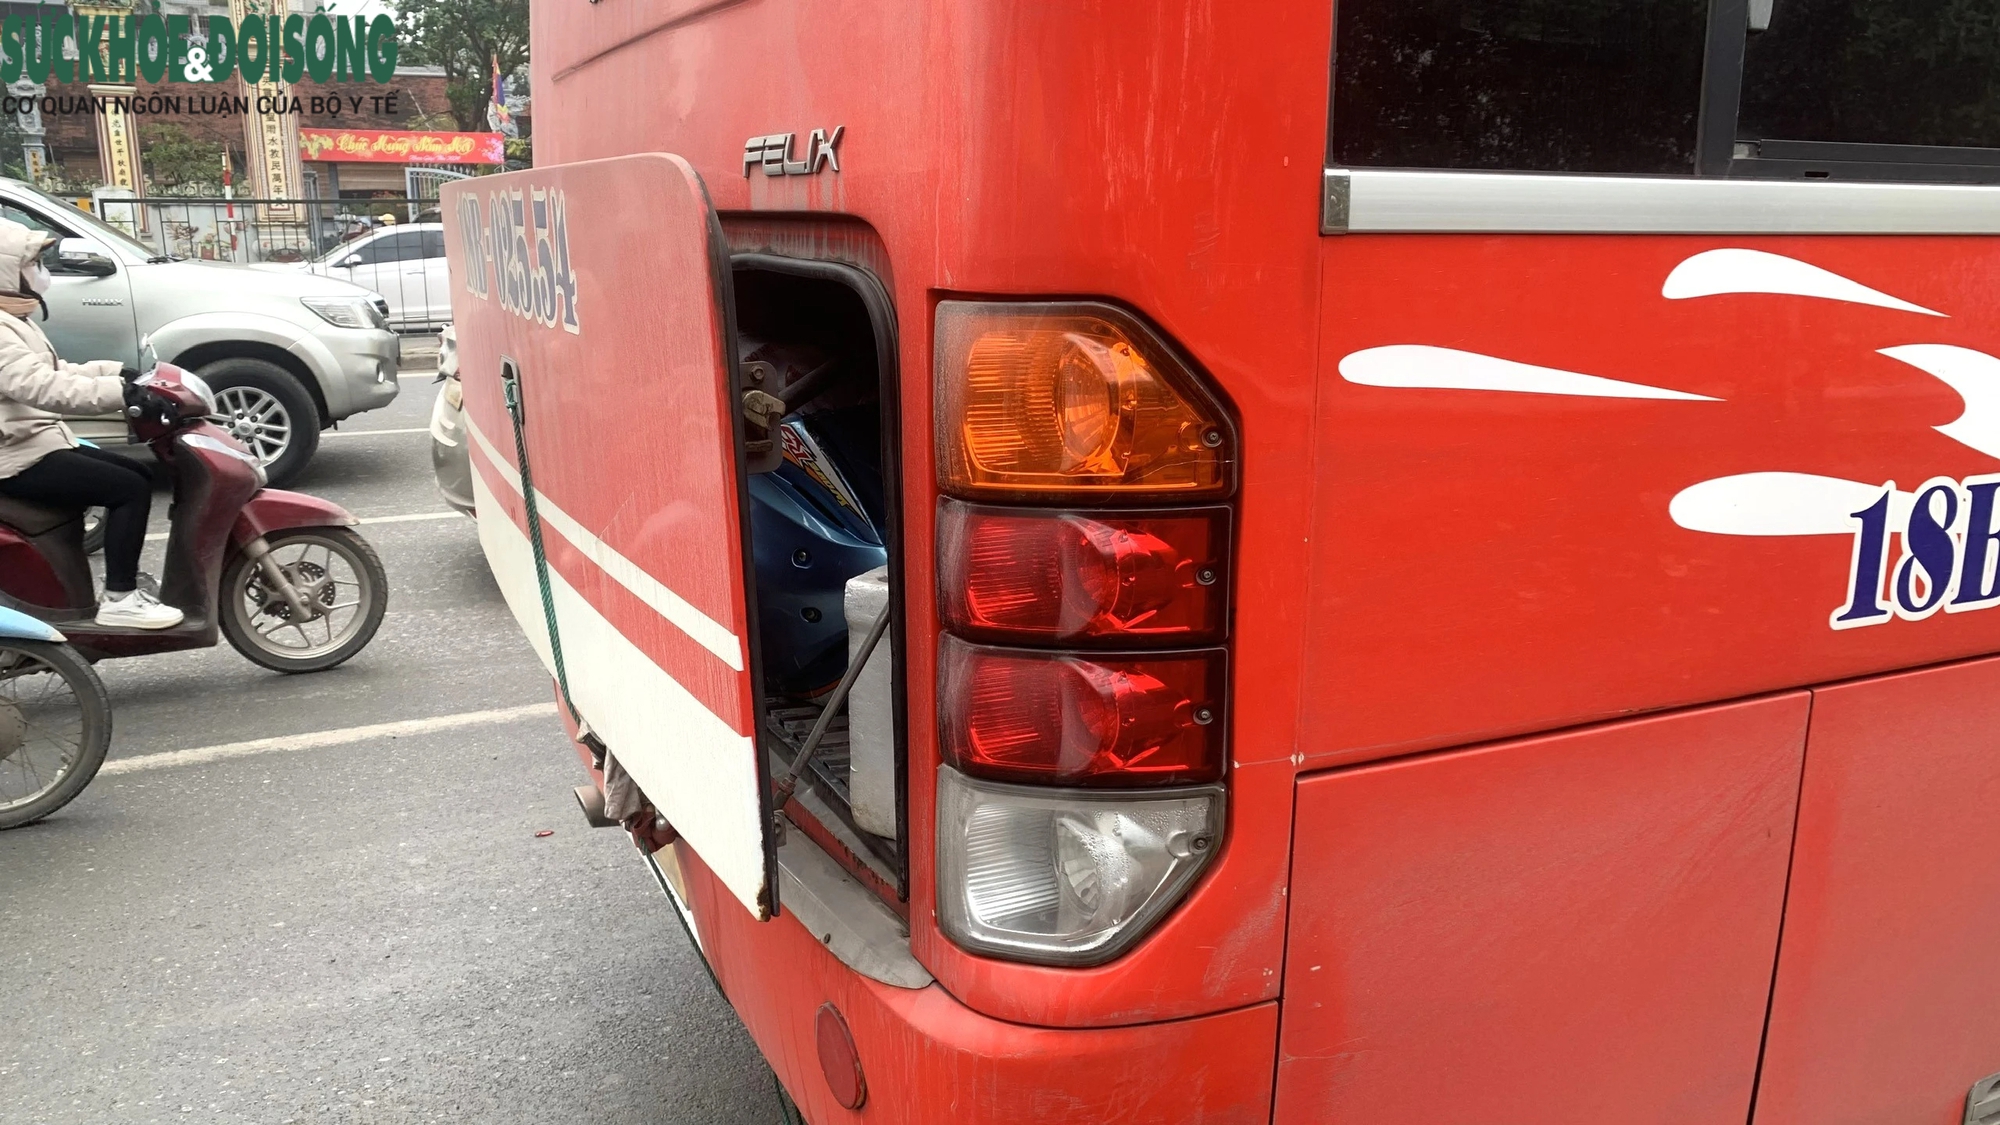 'Khám' xe khách dịp cận Tết, phát hiện tài xế chở cả xe máy trong khoang chở người- Ảnh 11.